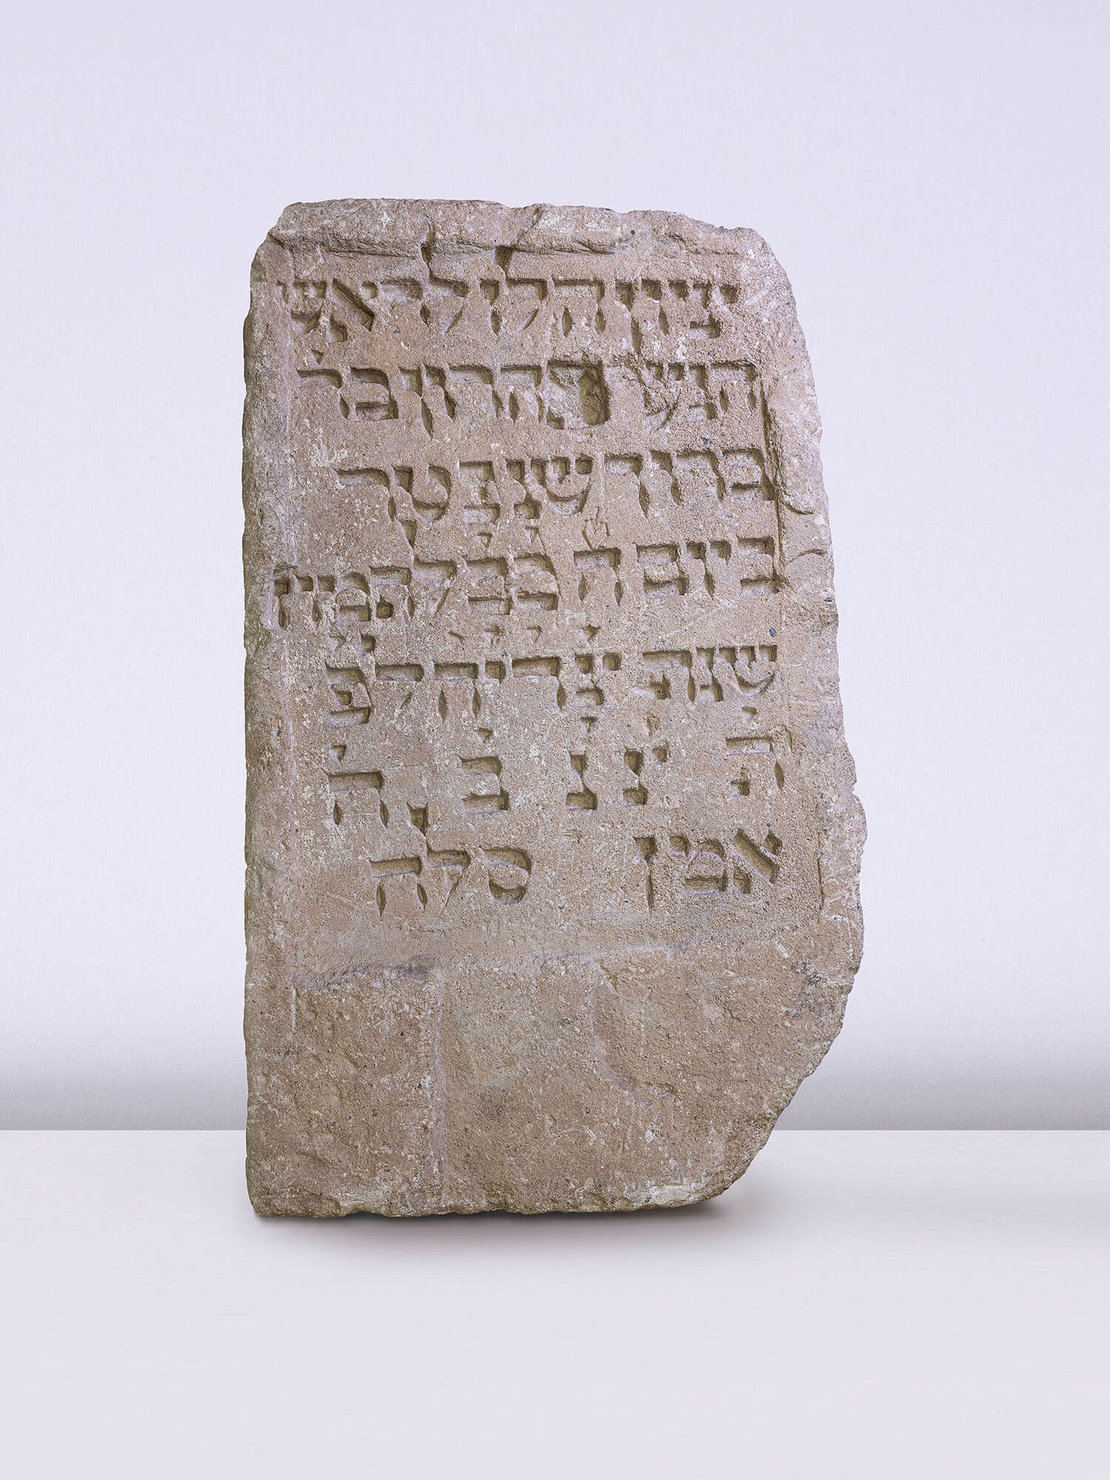 Grabstein mit hebräischer Inschrift für einen jungen Mann namens Aharon bar Baruch, der 1349 vermutlich an der Pest gestorben ist, Foto: Nafez Rerhuf 